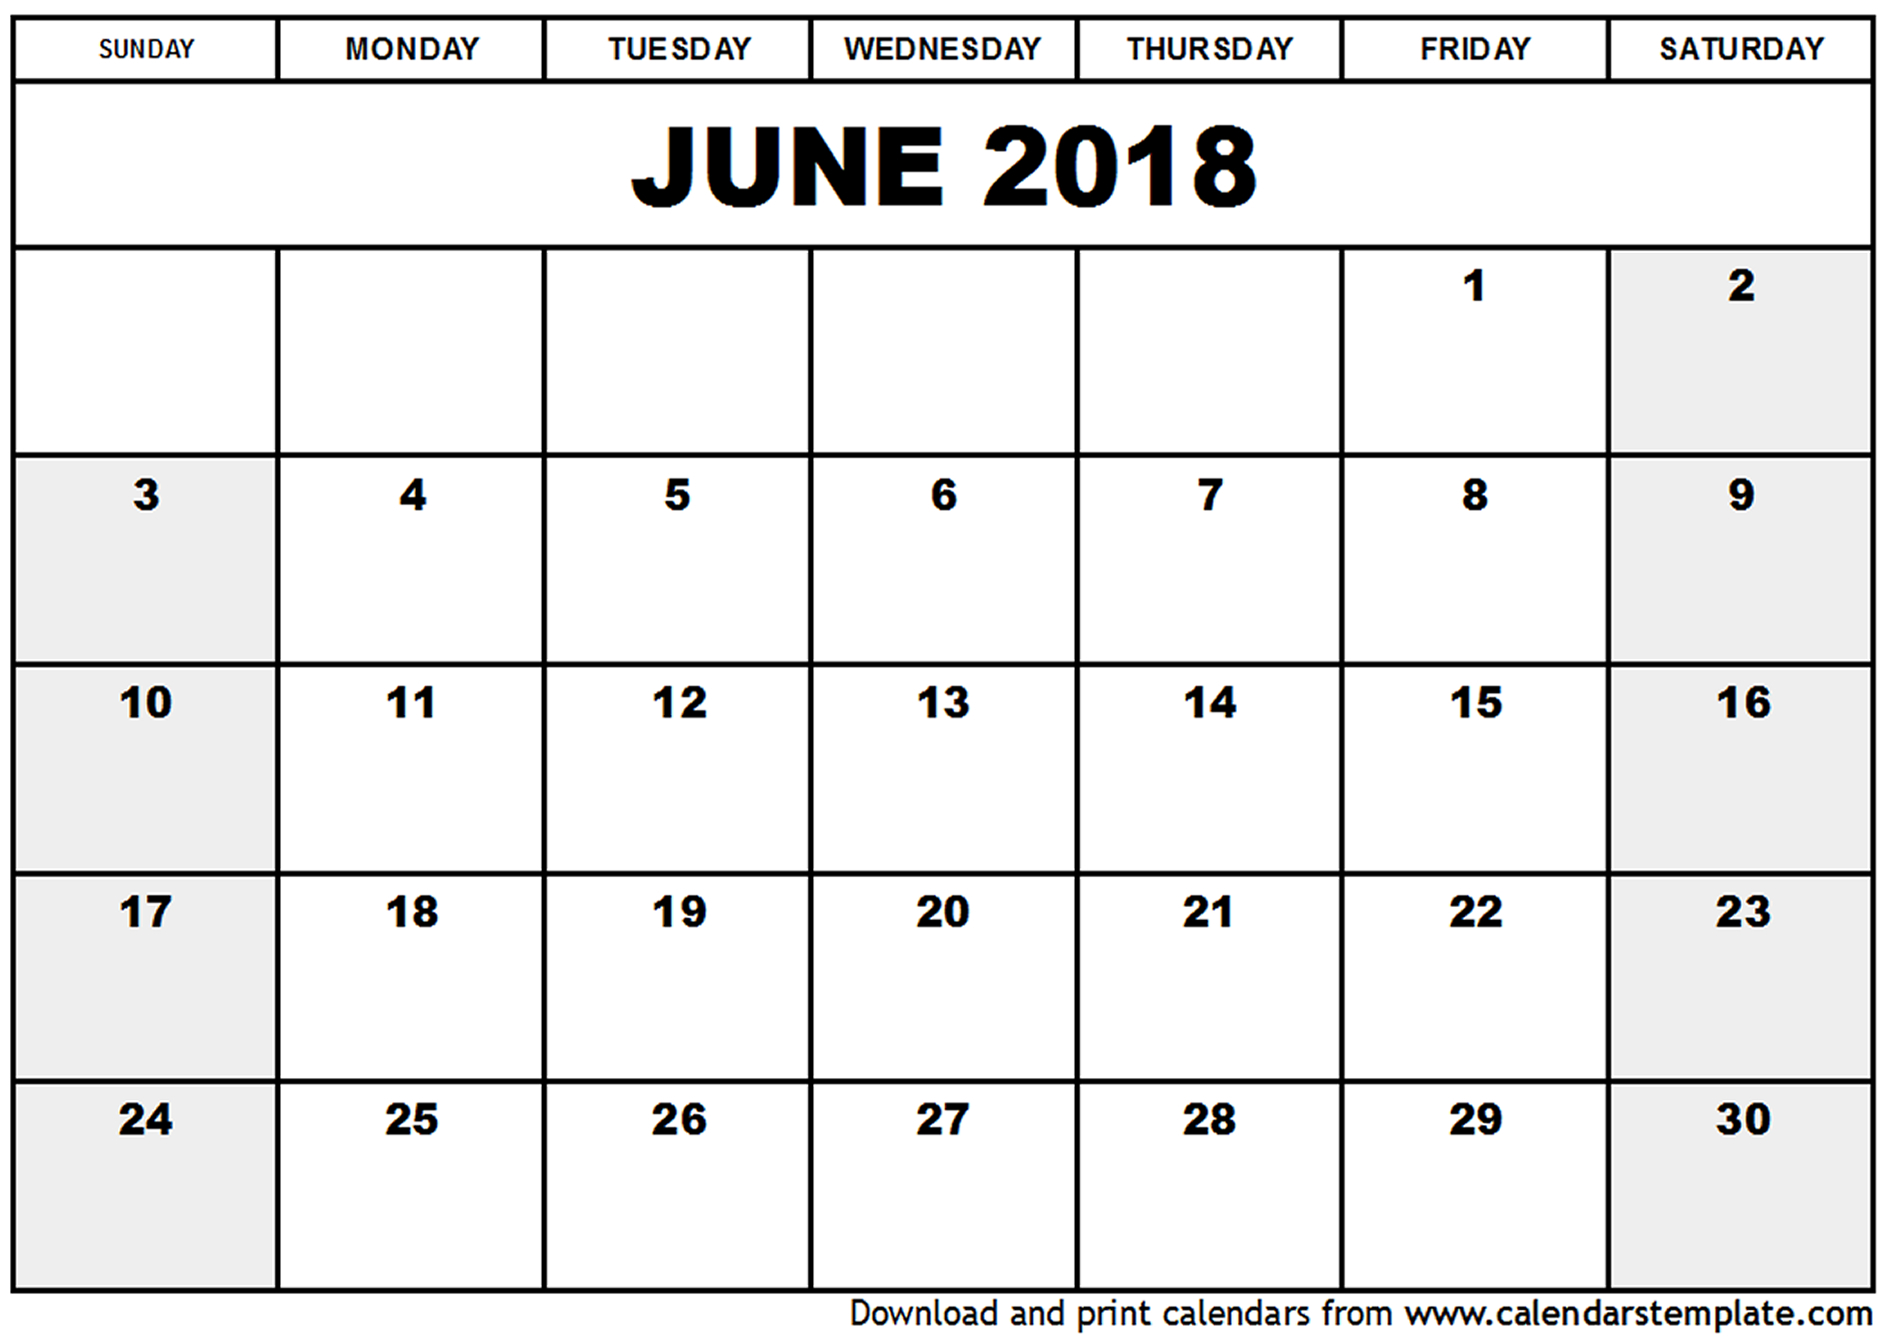 June 2018 printable calendar free